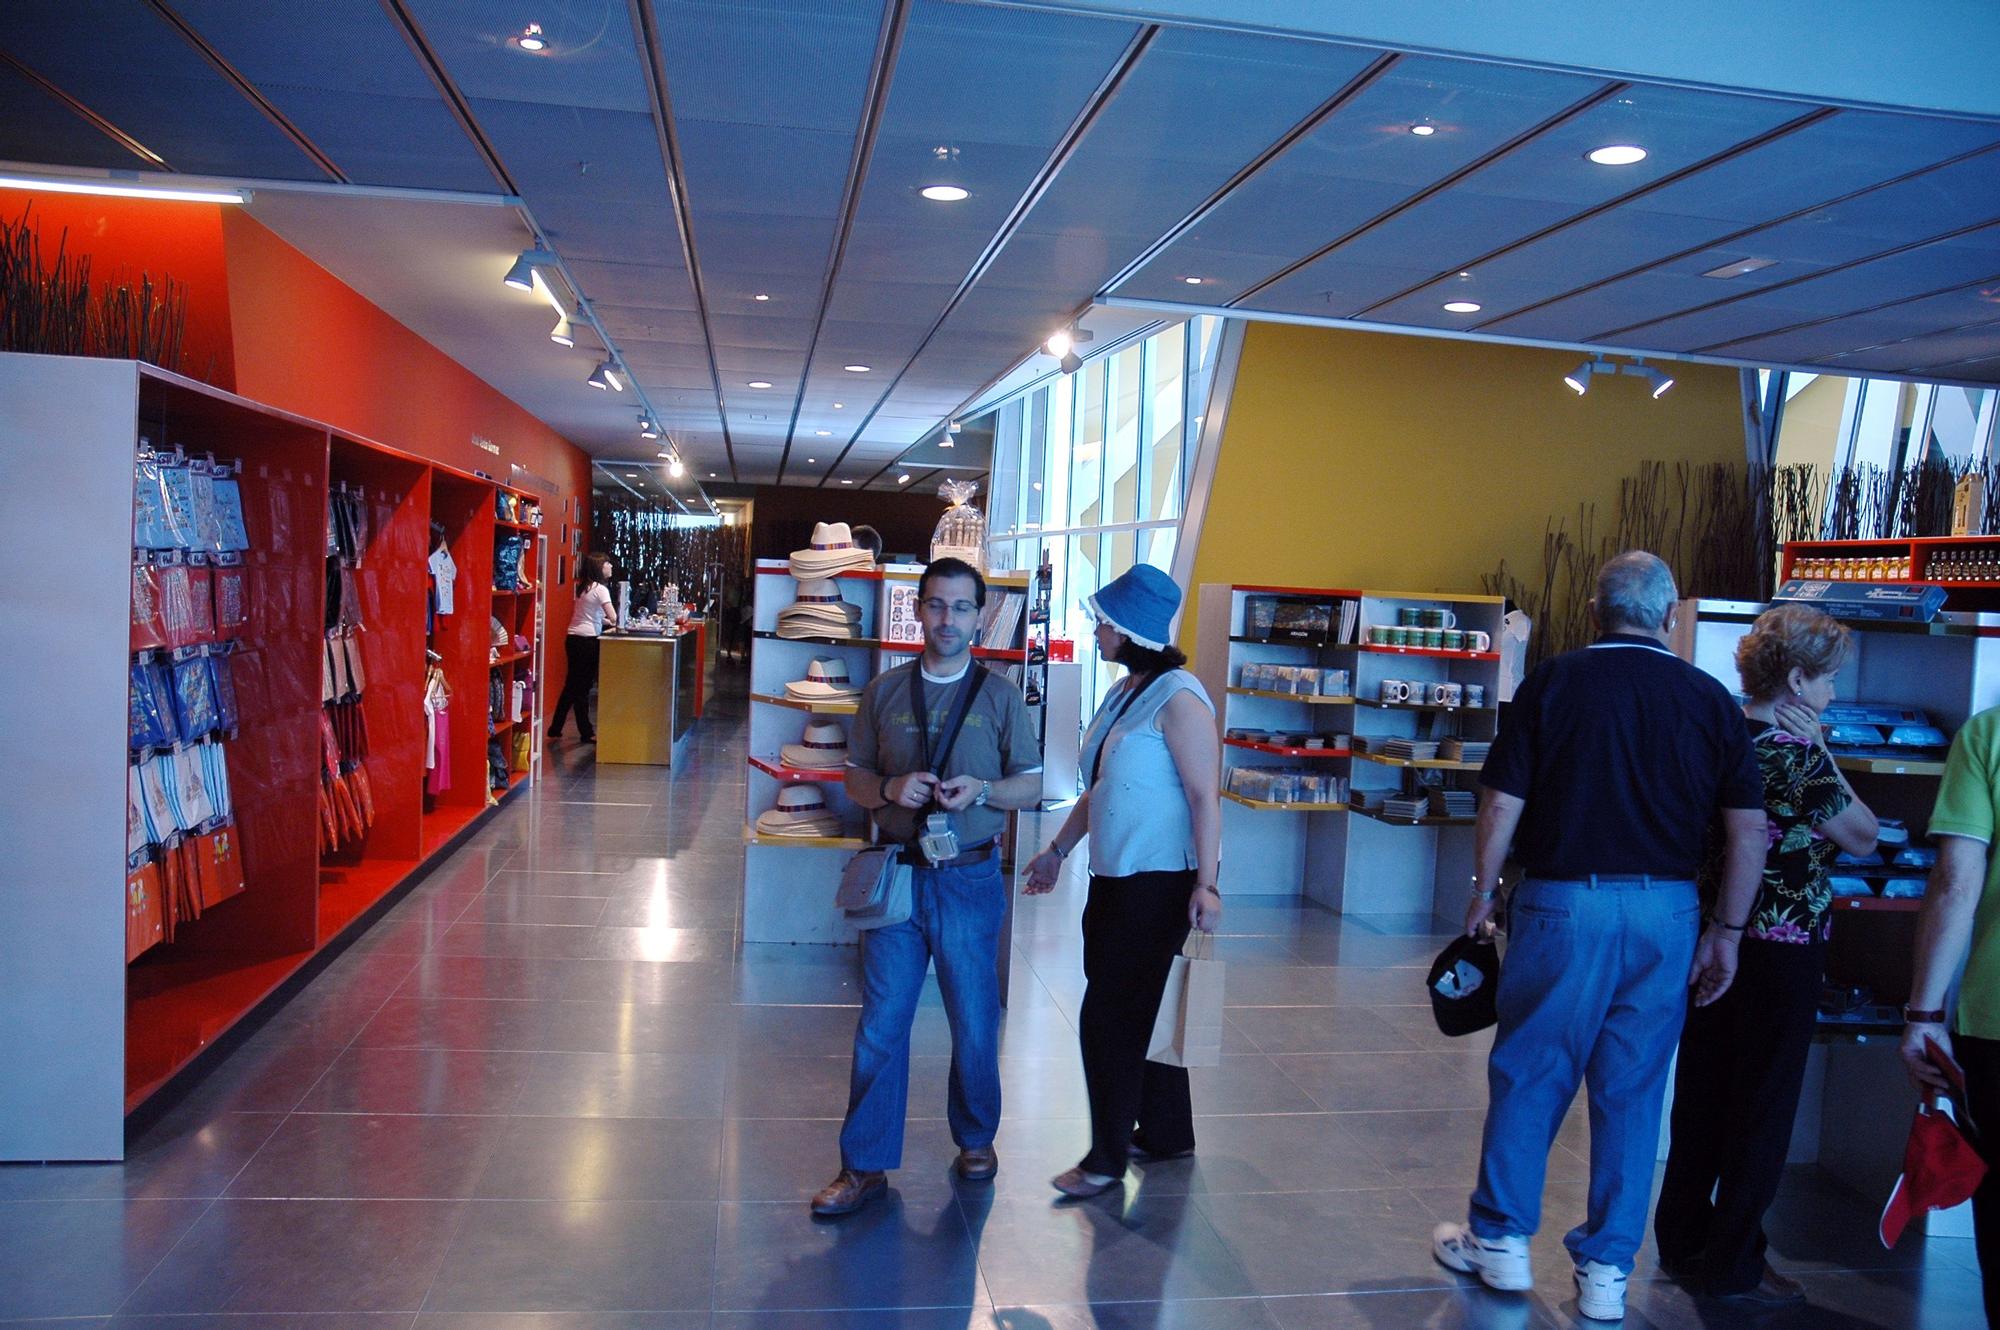 Así era el interior del Pabellón de Aragón en la Expo 2008